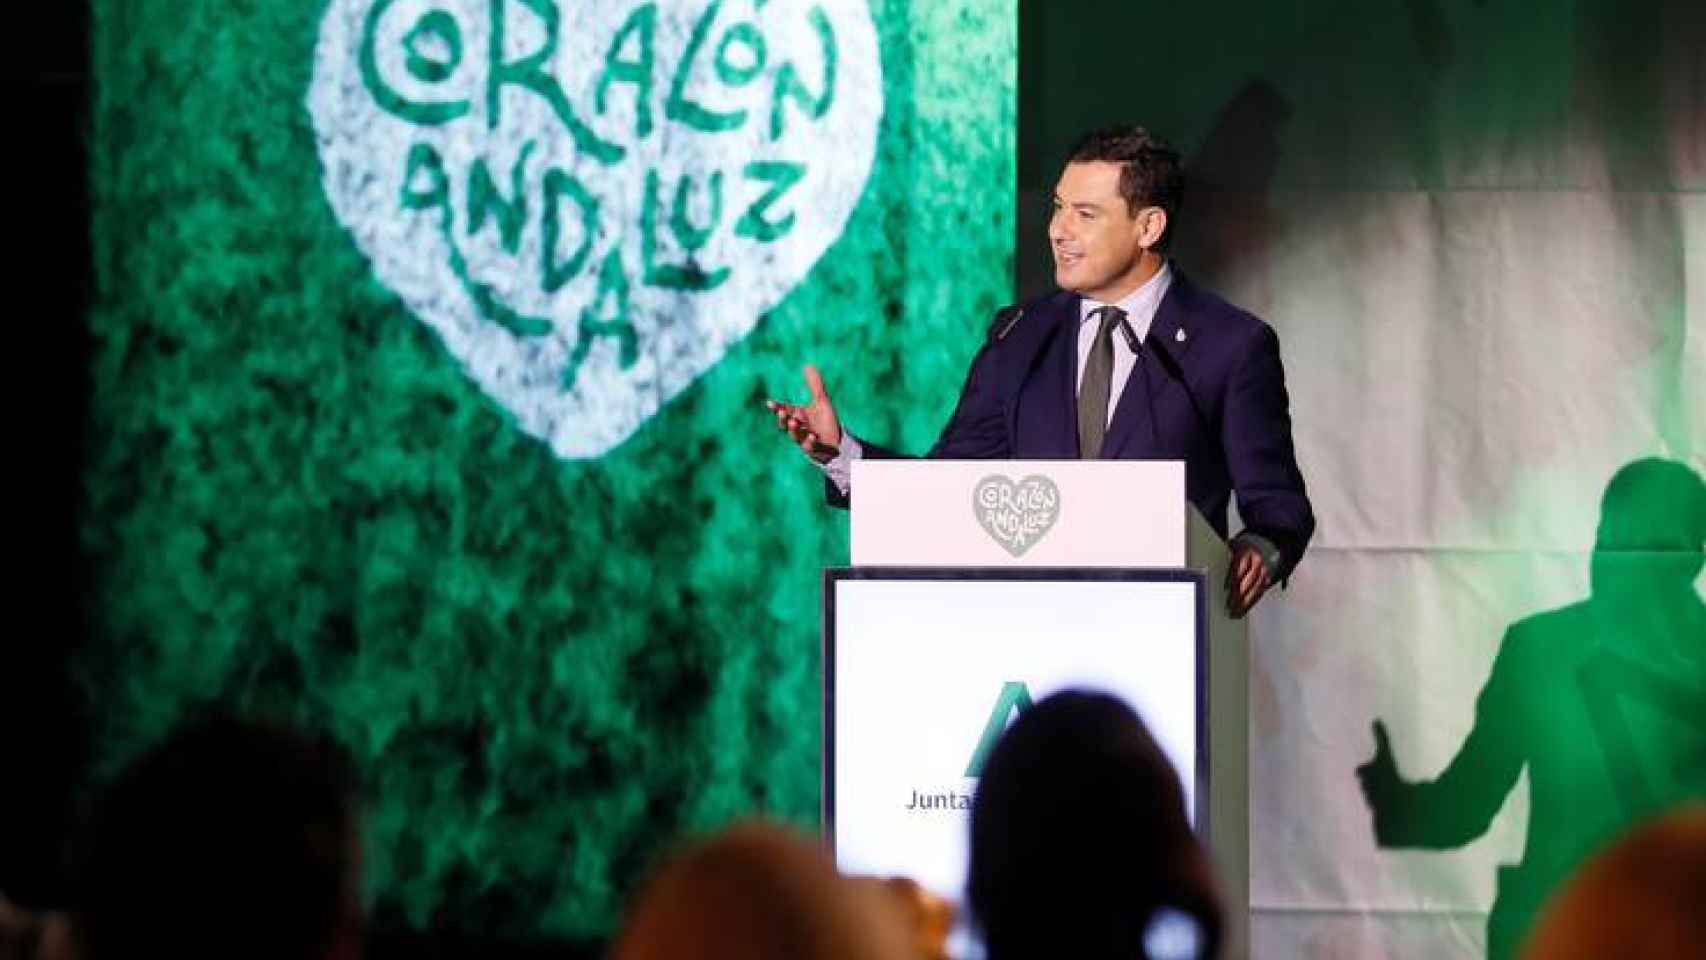 El presidente de la Junta, Juanma Moreno, anuncia la marca 'Corazón andaluz'.